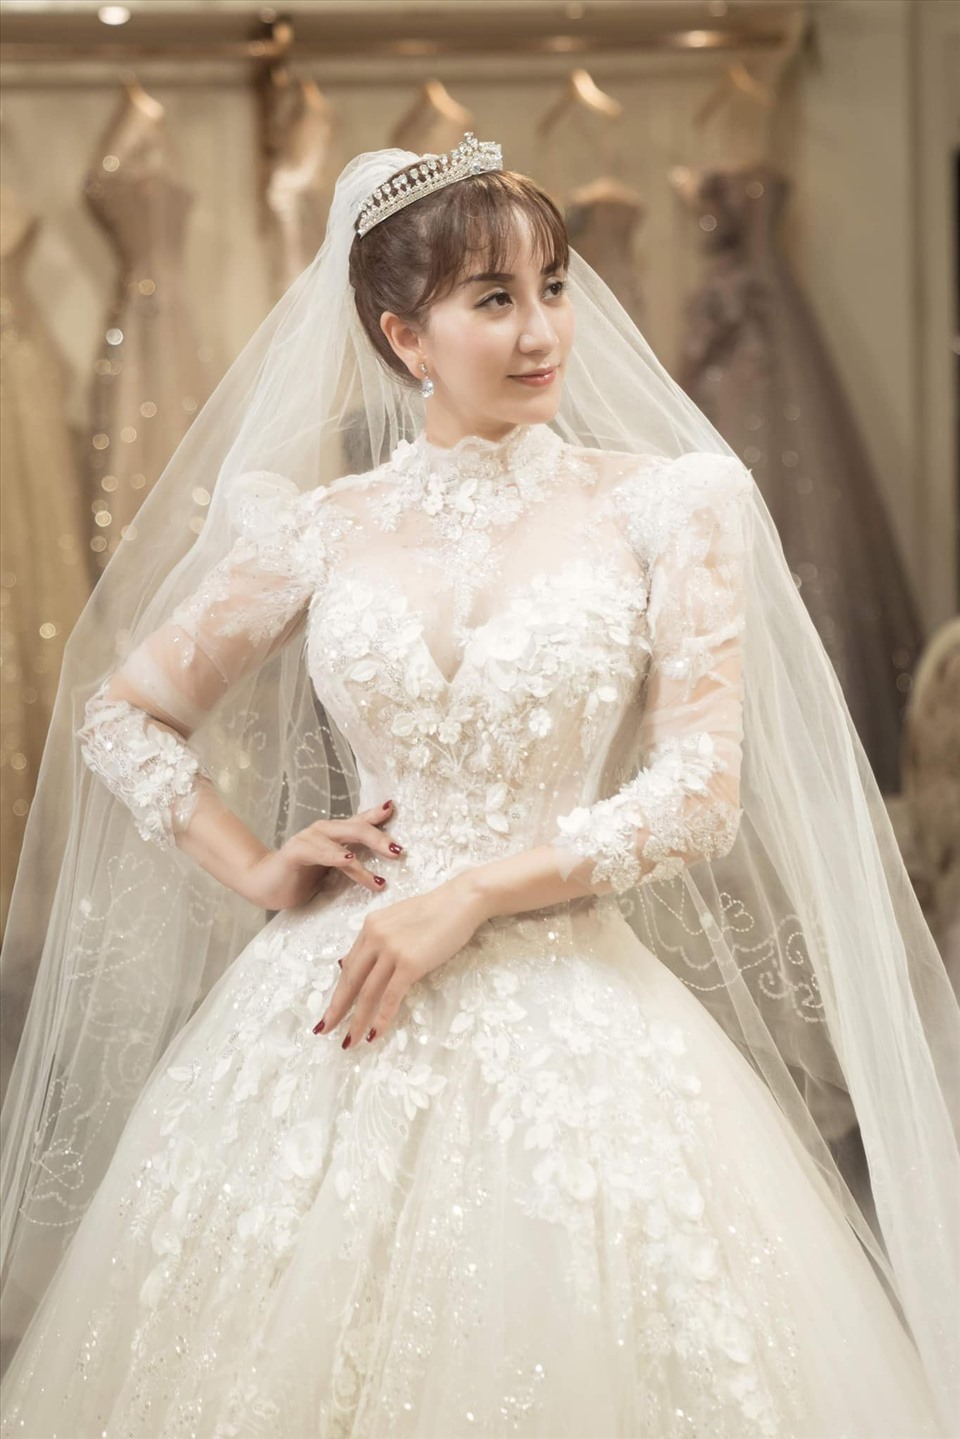 Chiếc váy cưới tuyệt đẹp của Khánh Thi đã hoàn thành hình ảnh người đẹp nhất trong ngày cưới của mình. Thiết kế tinh tế và đường nét hoàn hảo sẽ khiến bạn cảm thấy như được chìm đắm trong một câu chuyện cổ tích.